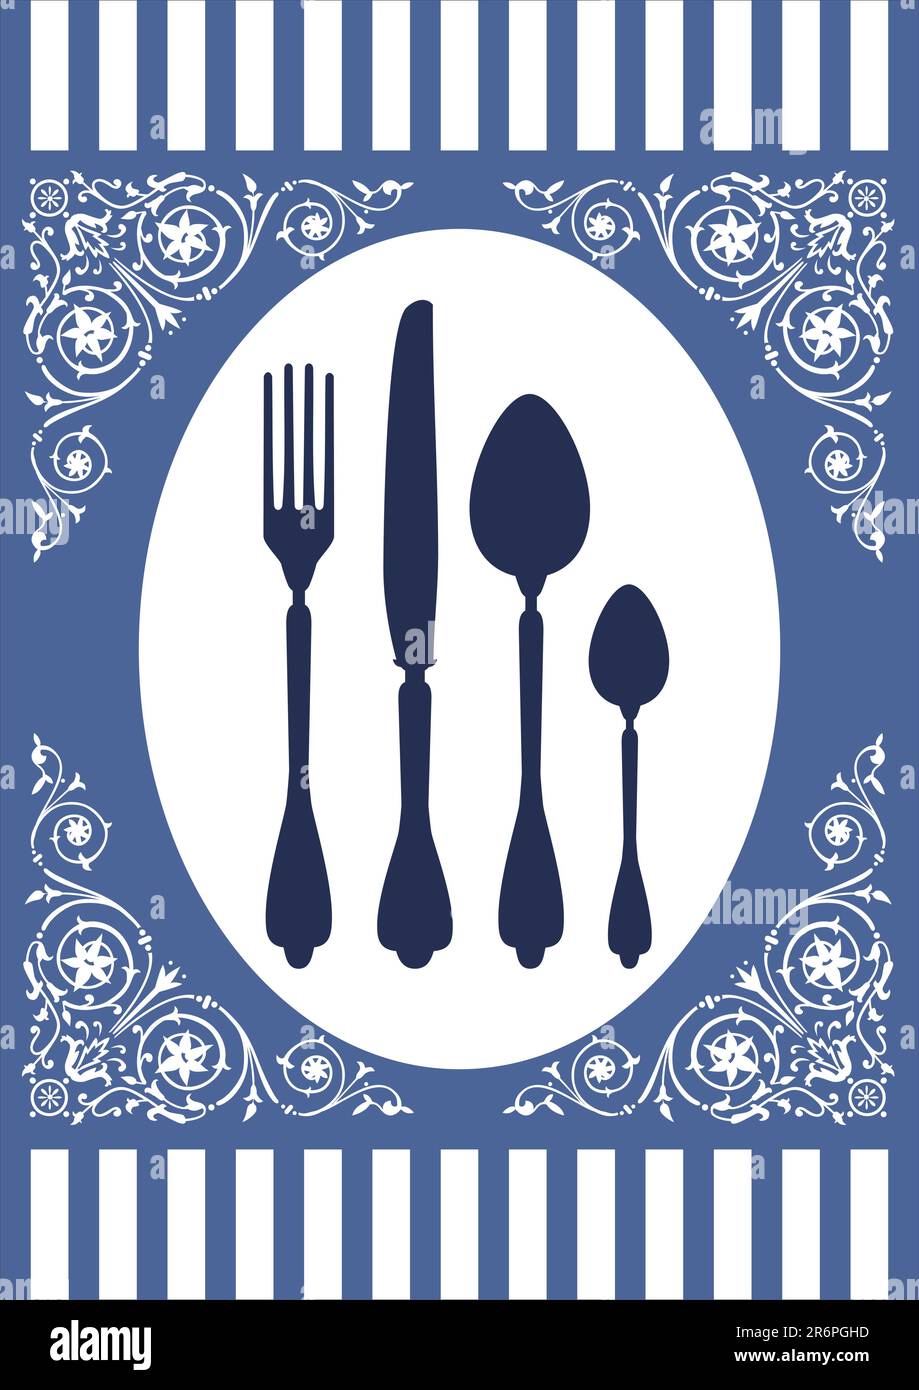 Placez le réglage avec la fourchette, la cuillère, le couteau et les ornements. Carte de menu pour la restauration ou le restaurant sur fond bleu. Graphique vectoriel entièrement évolutif Illustration de Vecteur